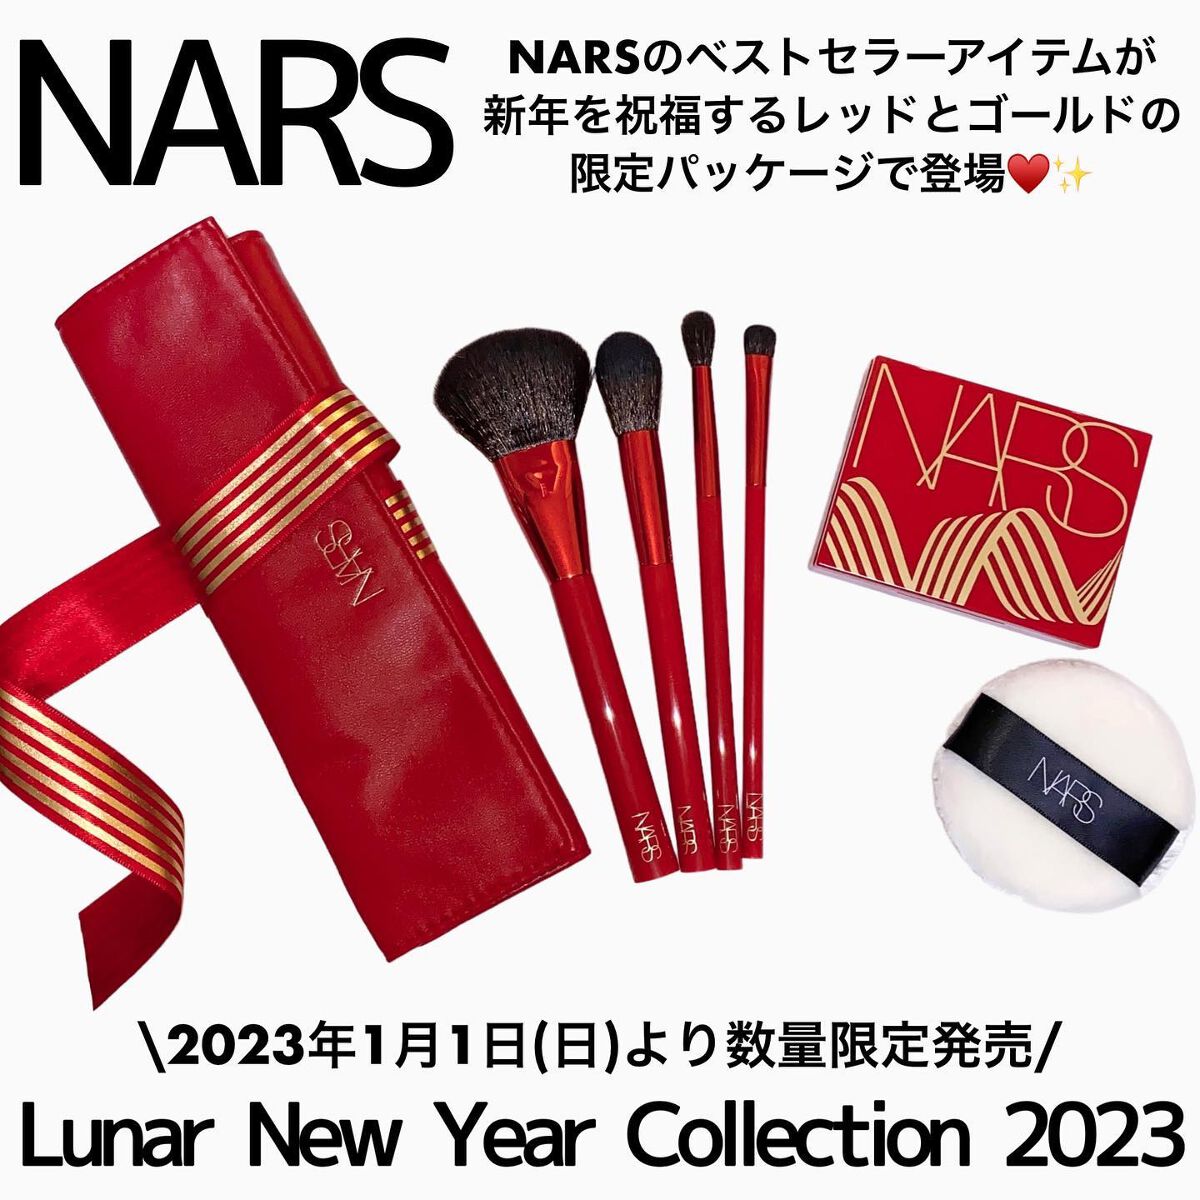 NARS ライトリフレクティングセッティングパウダーセット 2023限定